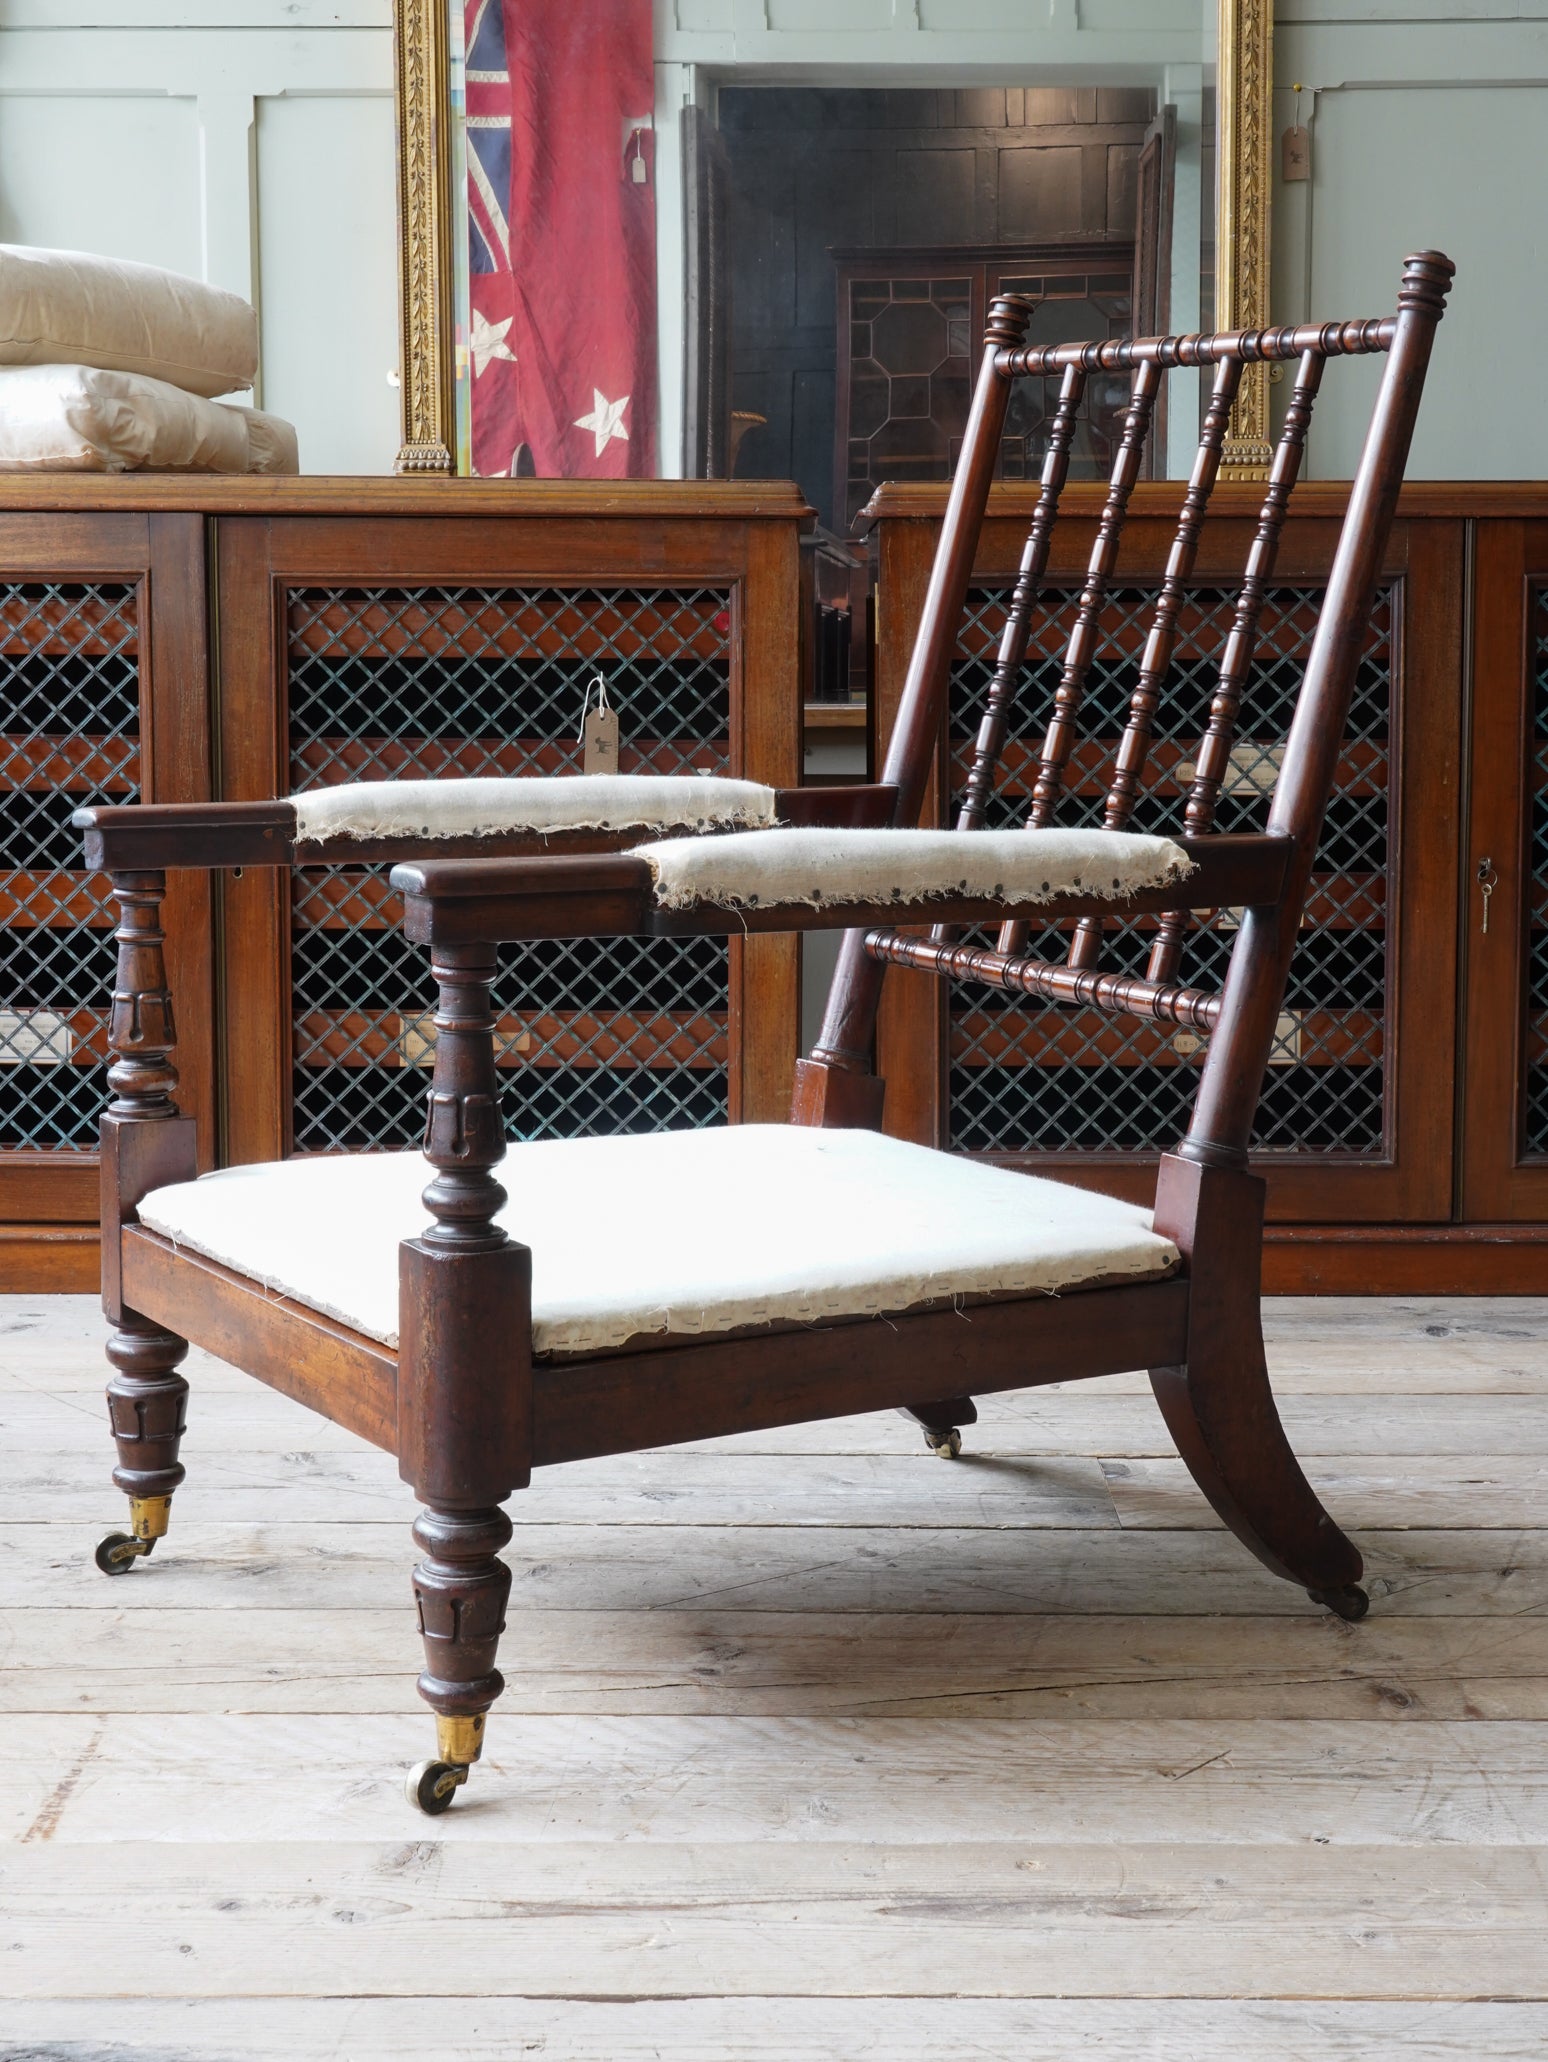 A 19th Century Mahogany Bobbin Chair